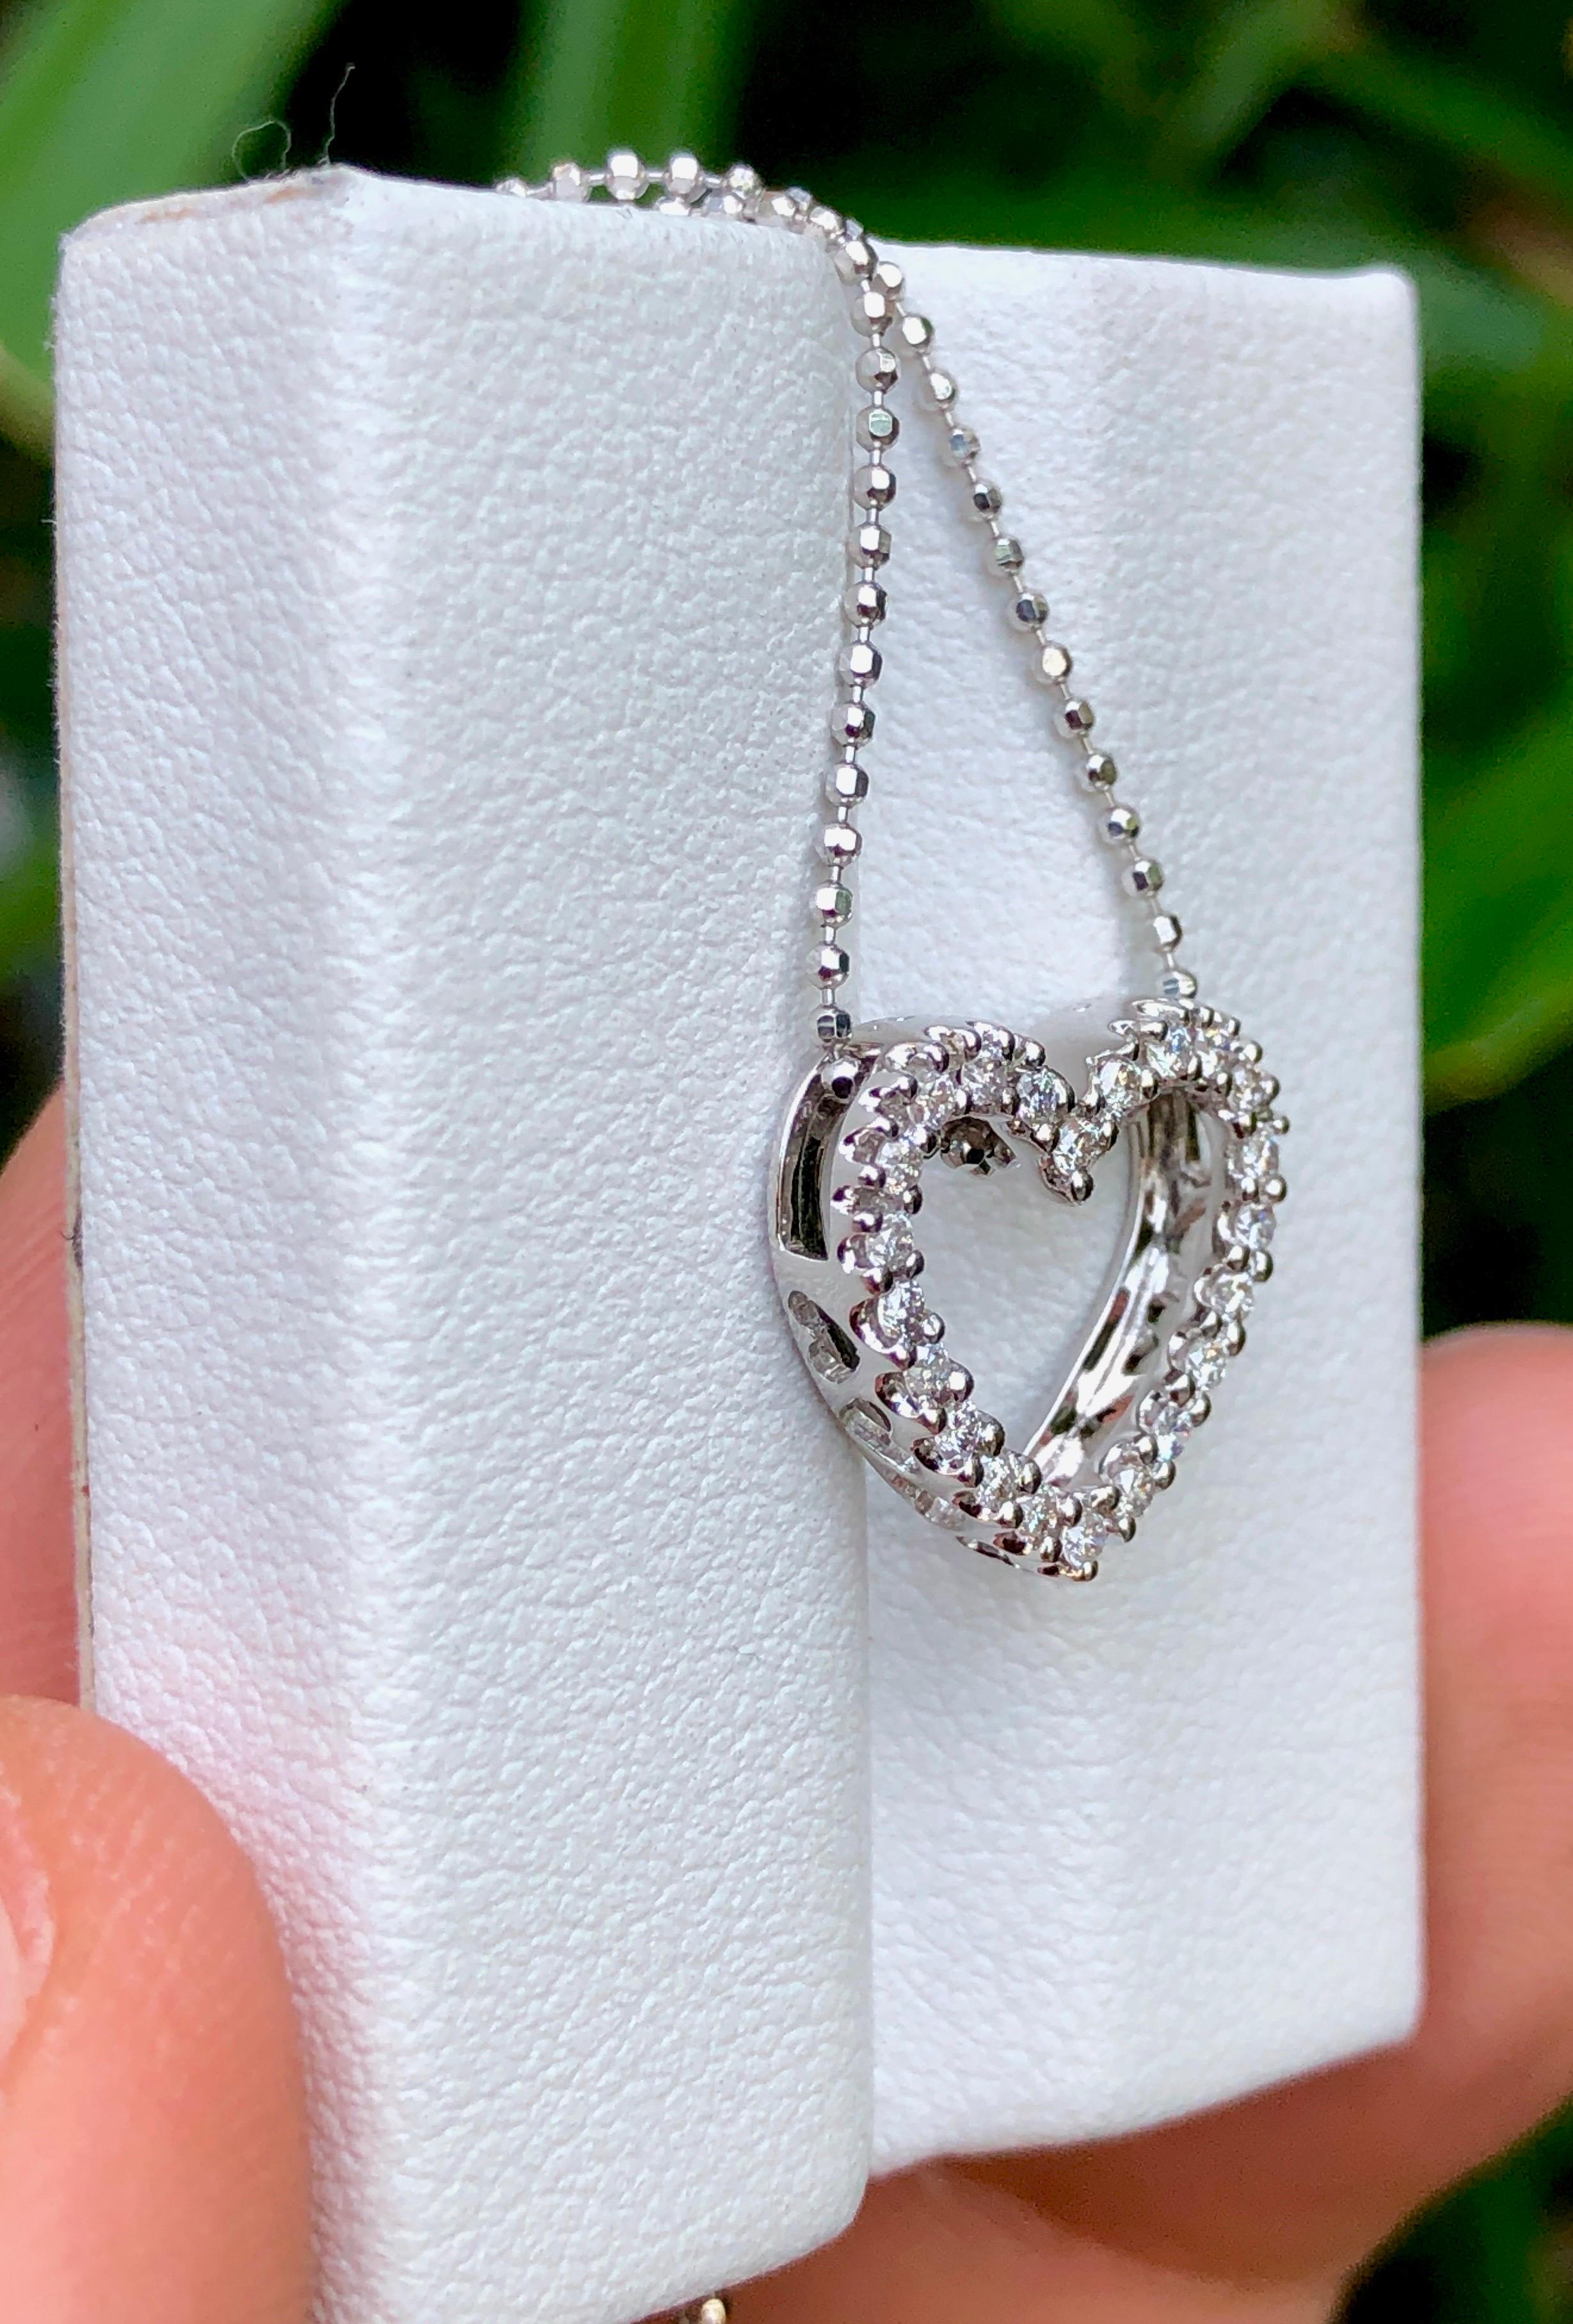 notre exquis pendentif diamant en forme de cœur en or blanc 18 carats, accompagné d'un collier 18 carats 💎 Rayonnez d'élégance et de sophistication avec cette pièce époustouflante, parfaite pour toutes les occasions. Rehaussez votre style et